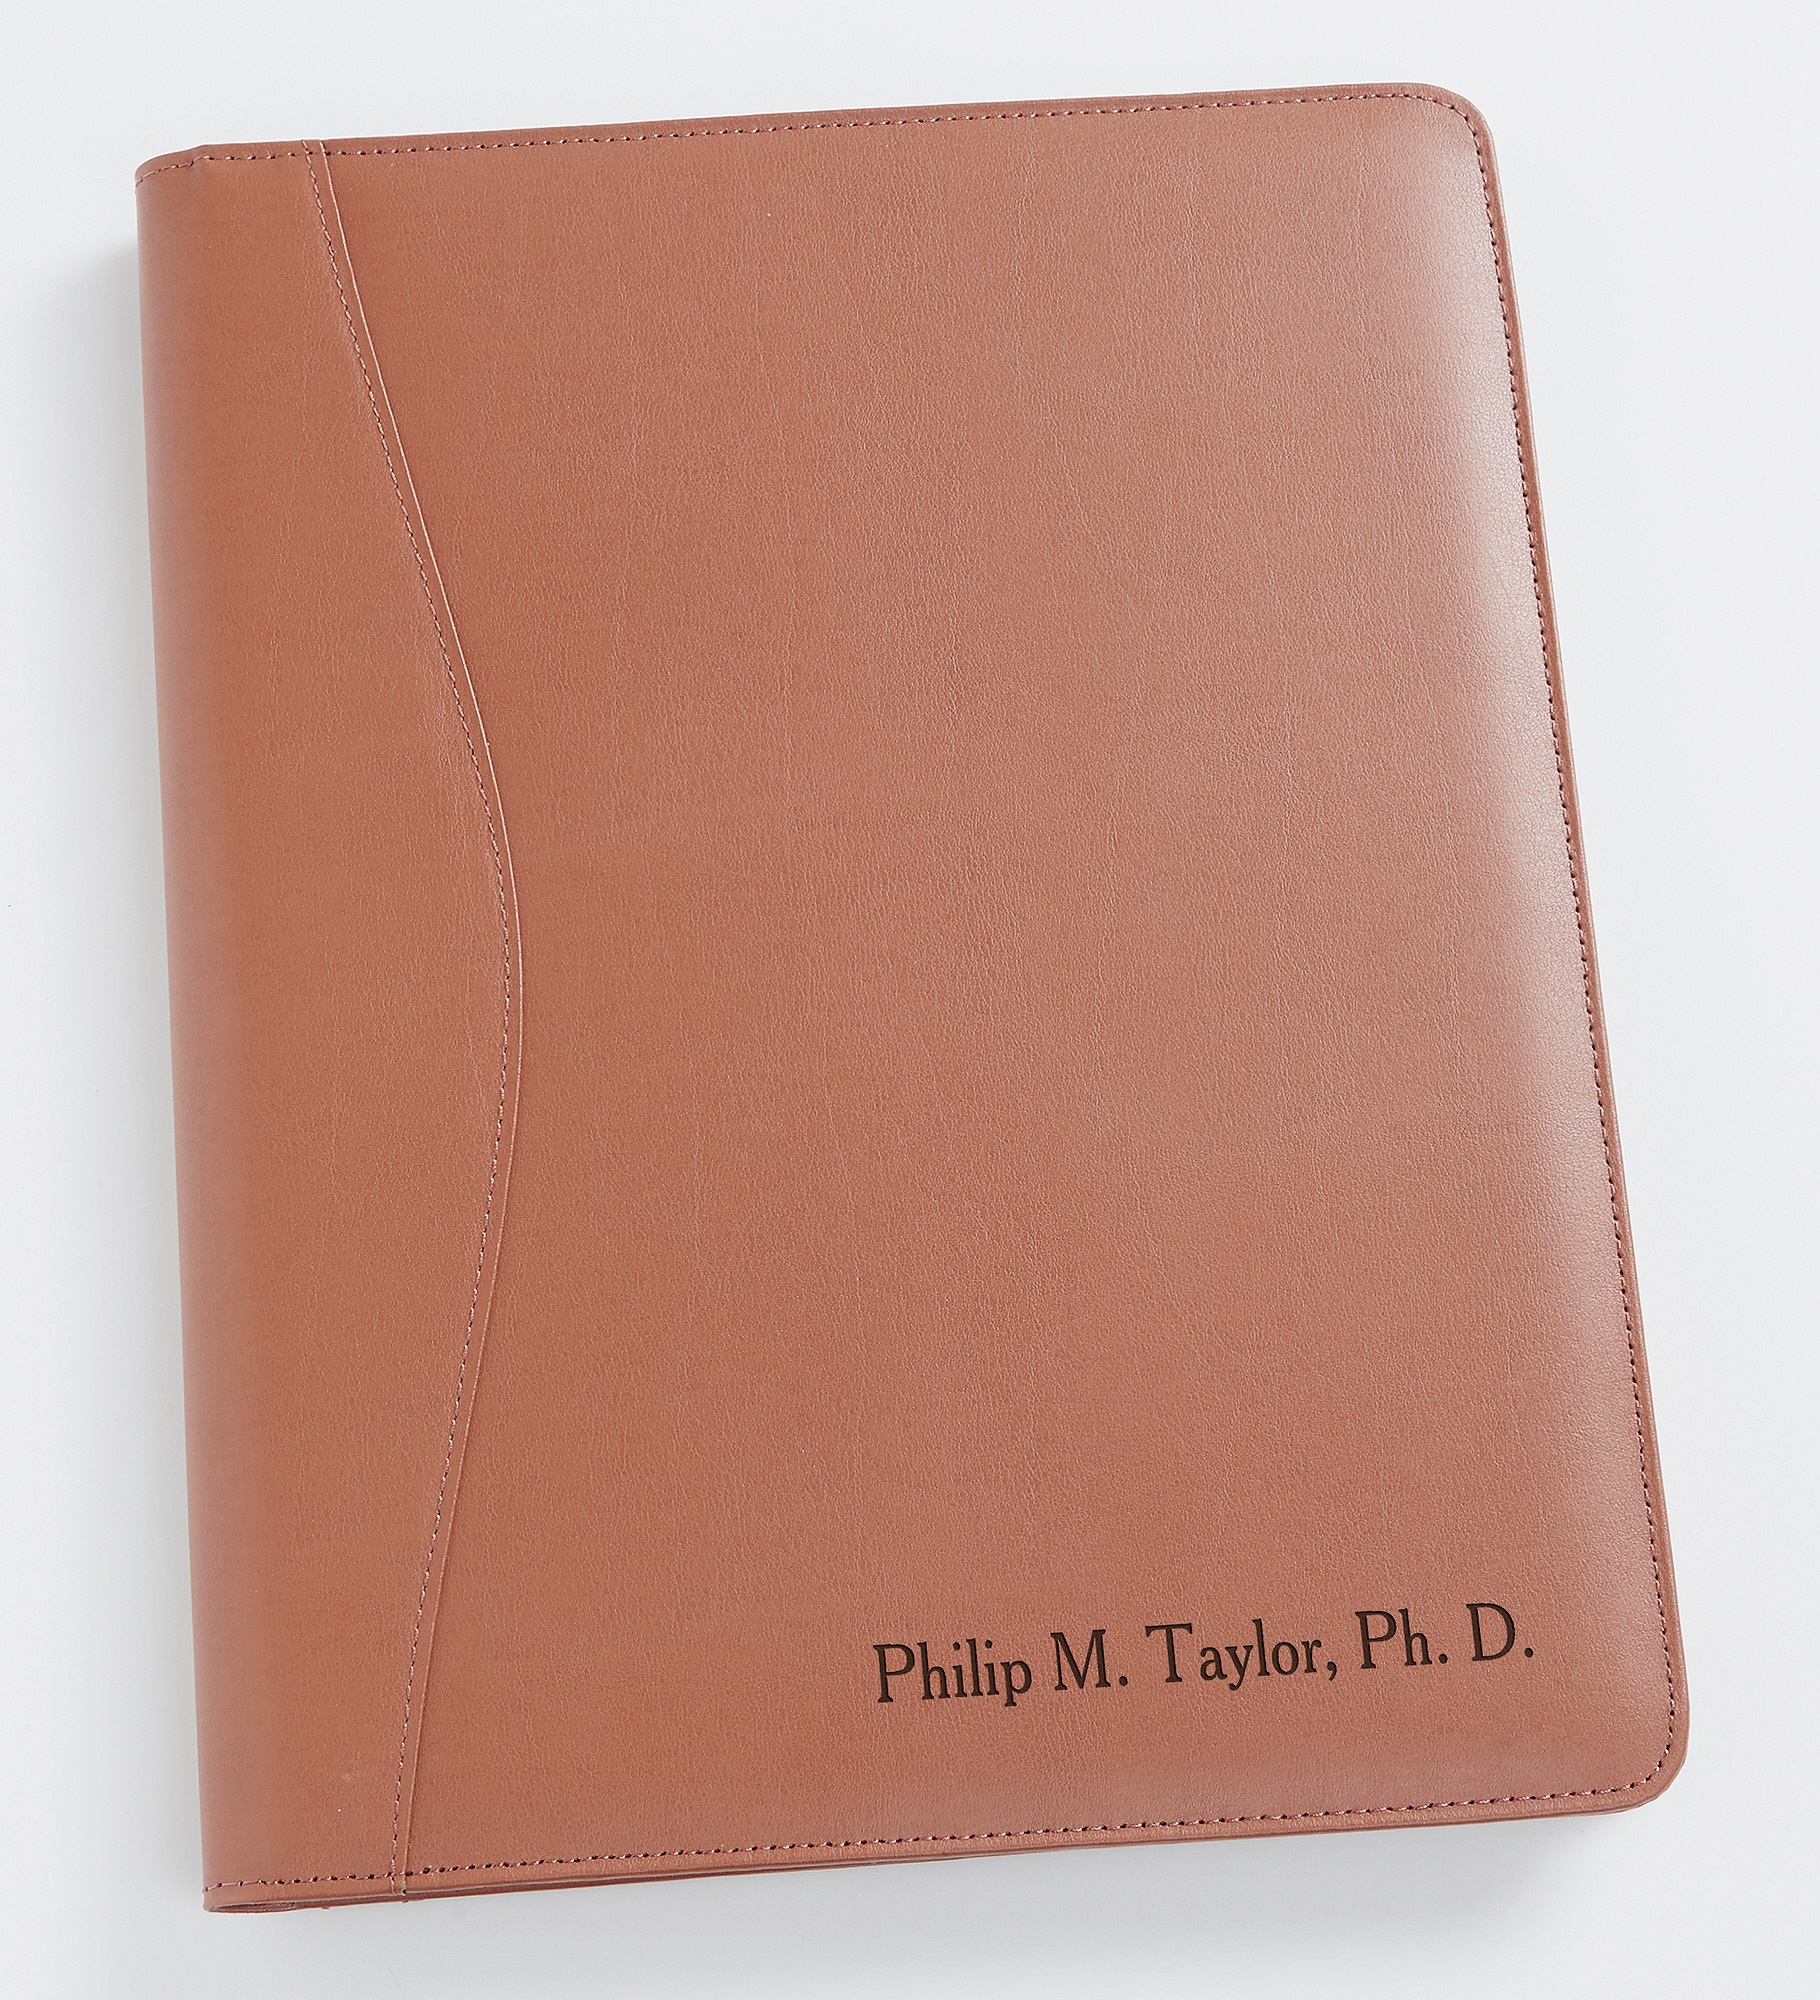 Executive Tan Leather Personalized Portfolio